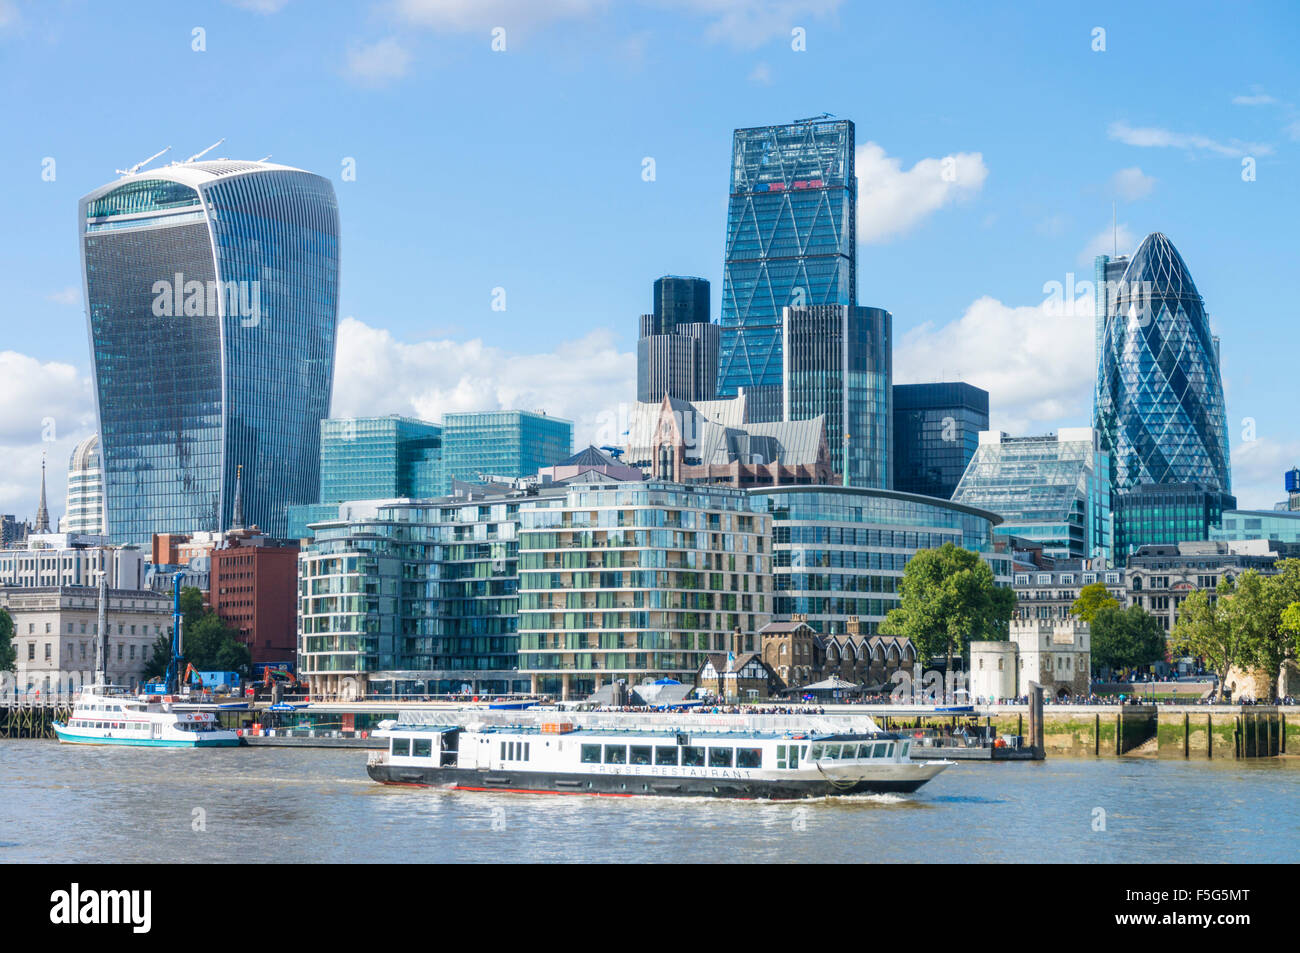 Londres City of London Skyline quartier financier gratte-ciel River Thames City of London GB Europe Banque D'Images